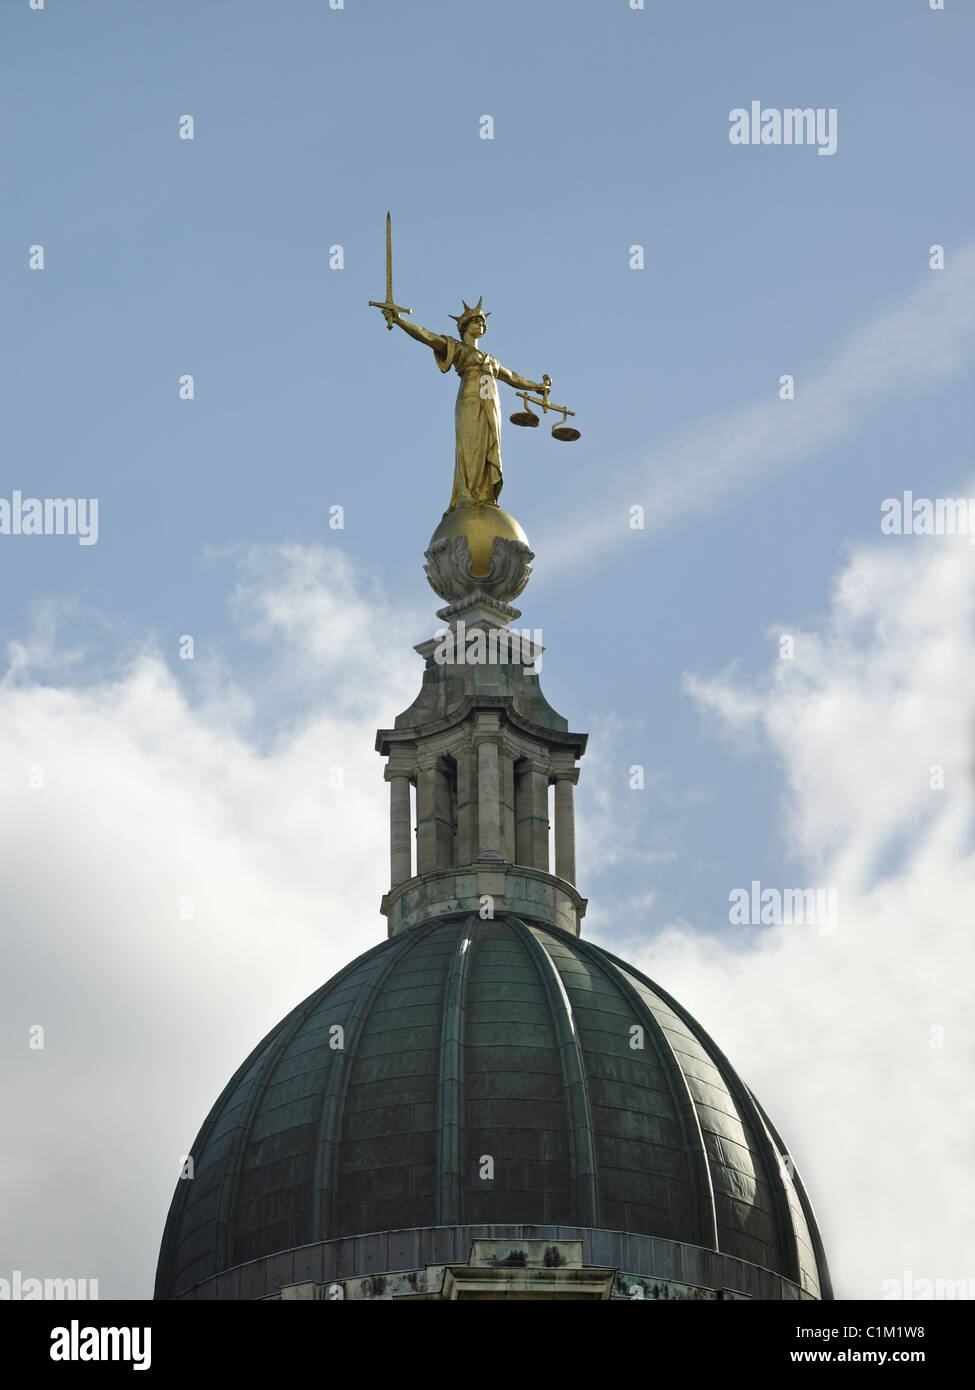 La figura de Doña Justicia sosteniendo una espada de castigo y equilibrar las escalas de la justicia, en el Old Bailey, la cooperación penal central Foto de stock